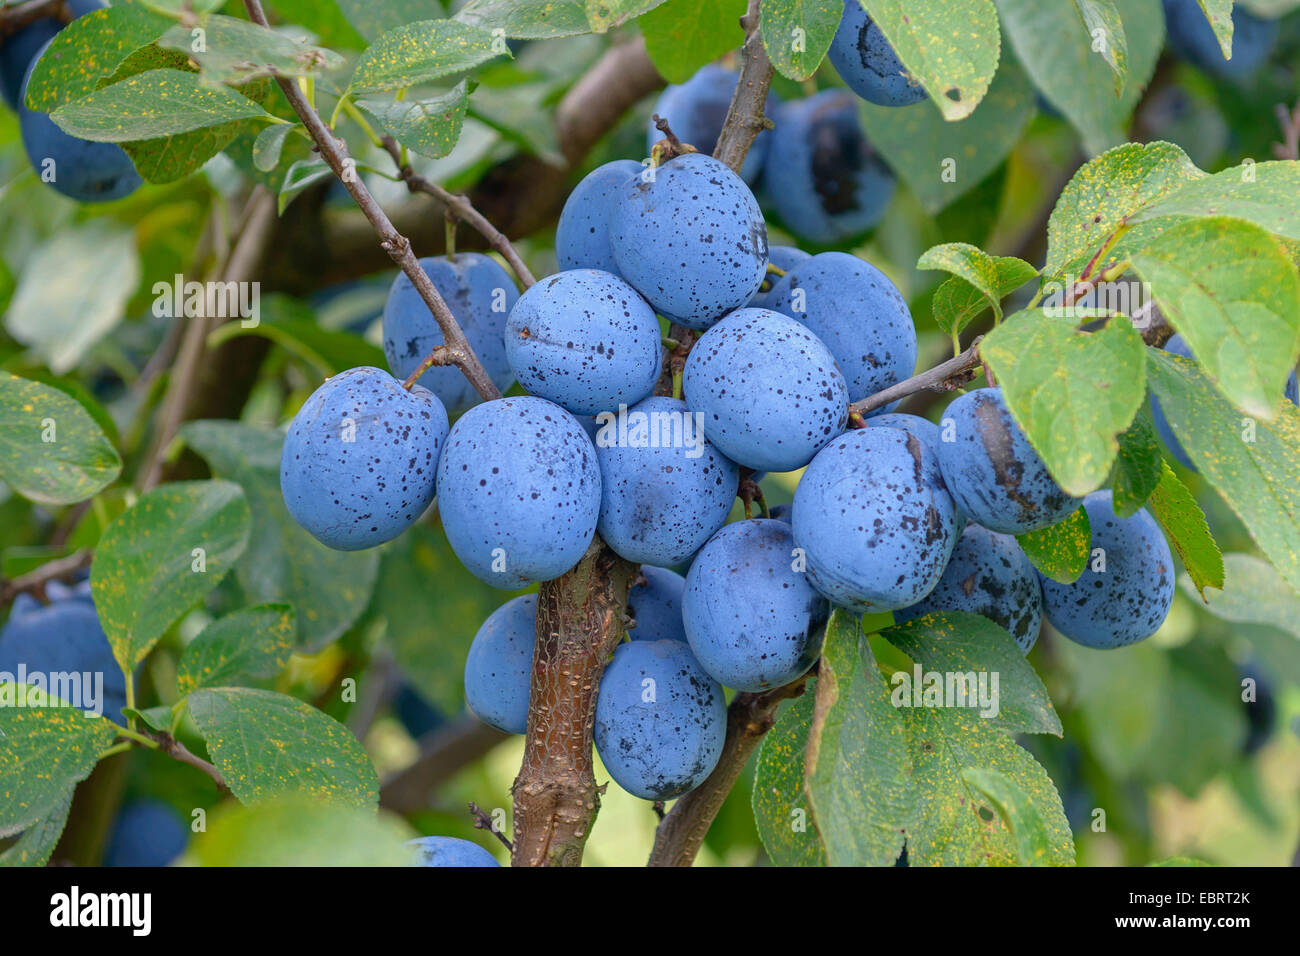 Unione prugna (Prunus domestica " Topfive', Prunus domestica Topfive), prugne su un albero, cultivar Topfive Foto Stock